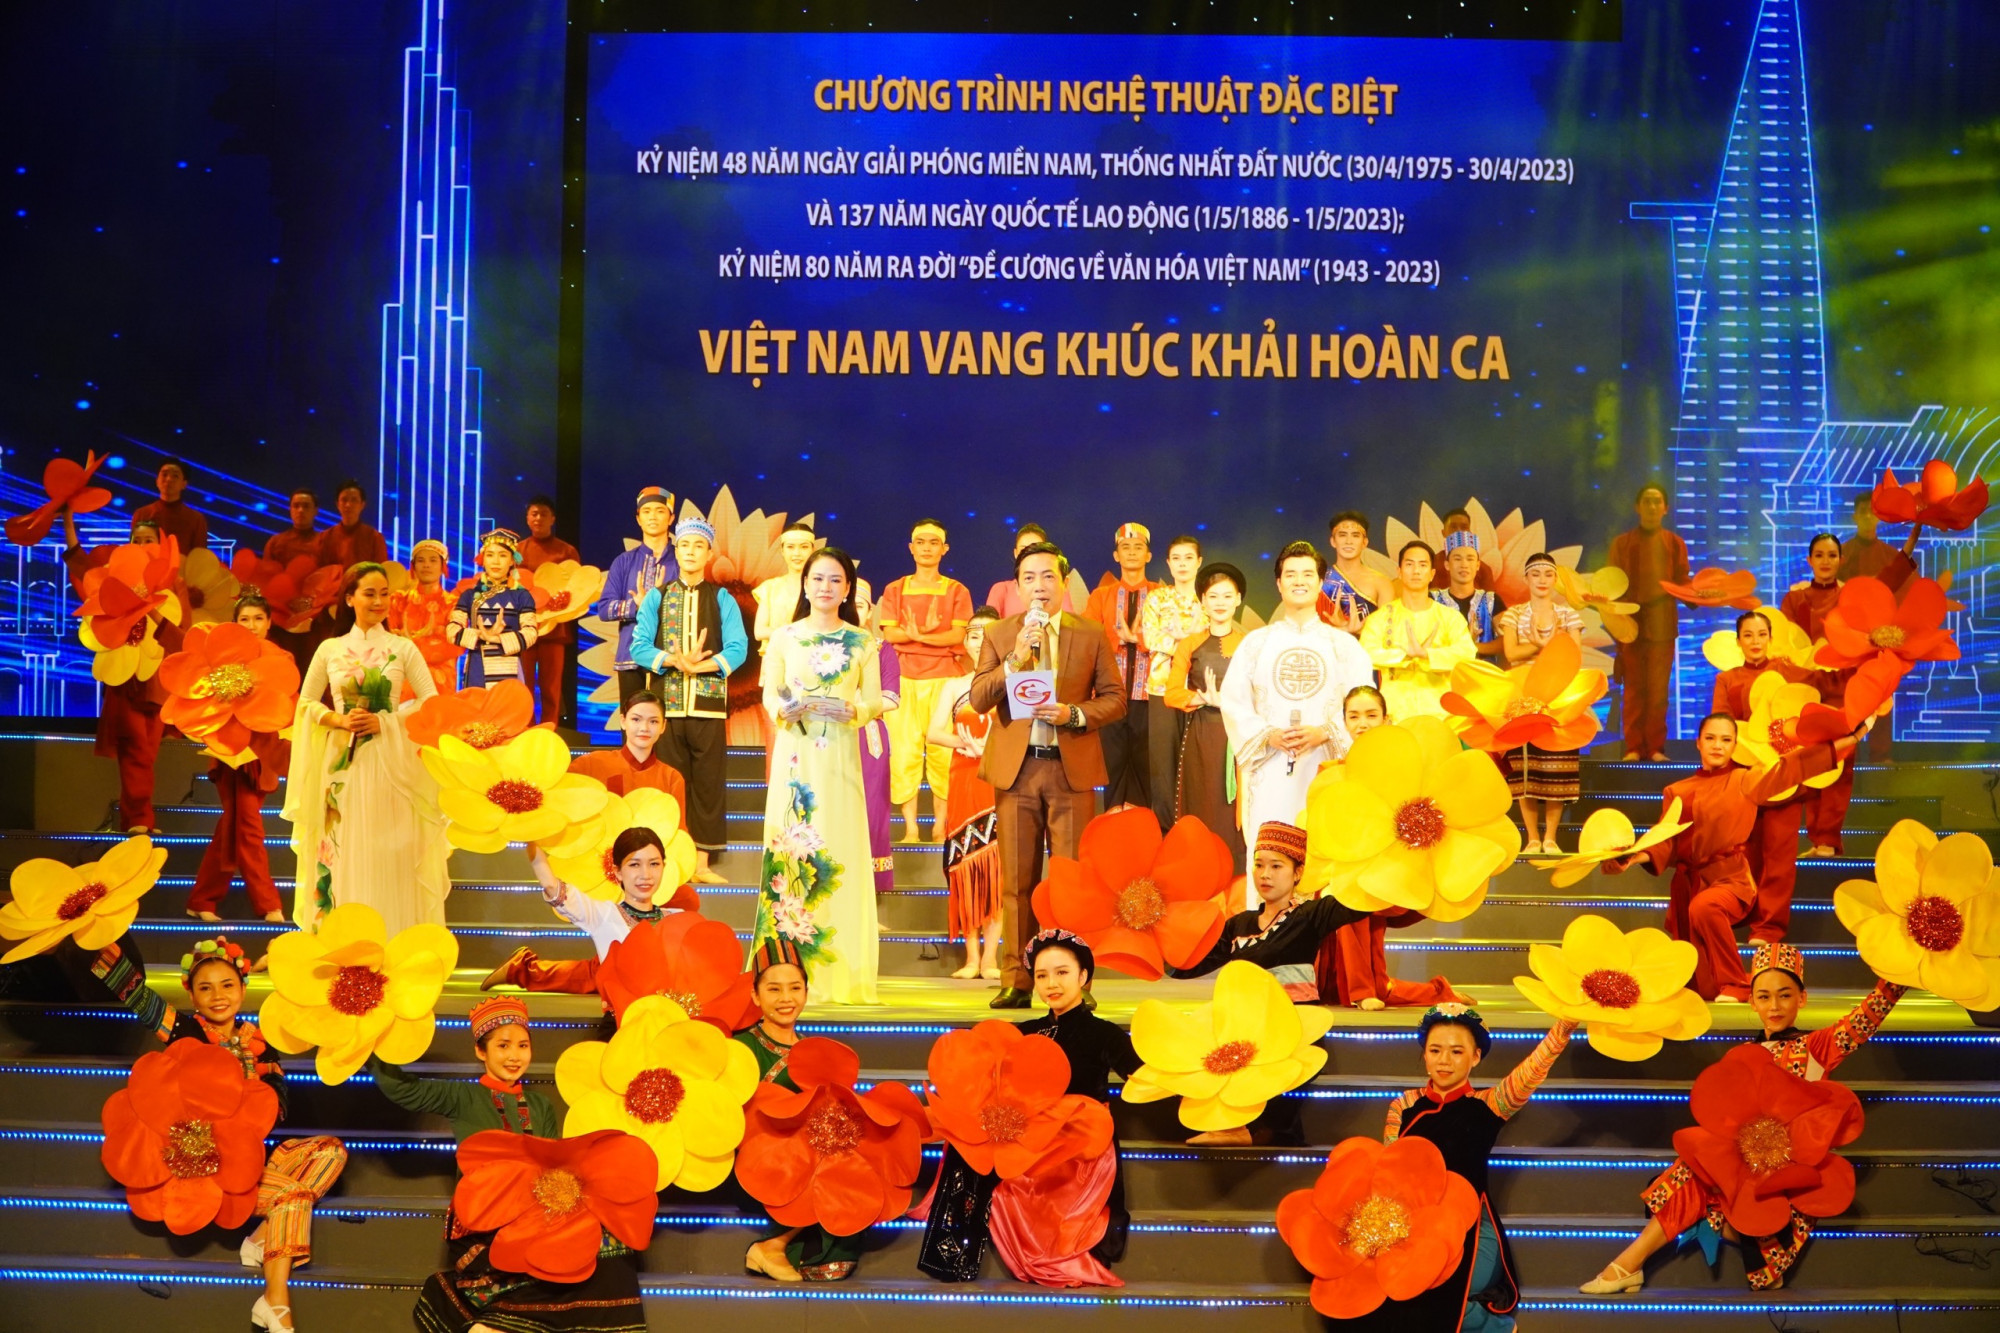 Kỷ niệm 48 năm Ngày giải phóng miền Nam, thống nhất đất nước (30/4/1975 - 30/4/2023) và 137 năm ngày quốc tế lao động (1/5/1886 - 1/5/2021); Kỷ niệm 80 năm ra đời “Đề cương về văn hóa Việt Nam” (1943 – 2023). Chương trình do Ban tổ chức kỷ niệm các ngày lễ lớn thành phố Hồ Chí Minh tổ chức, Trung tâm Ca nhạc nhẹ TP thực hiện